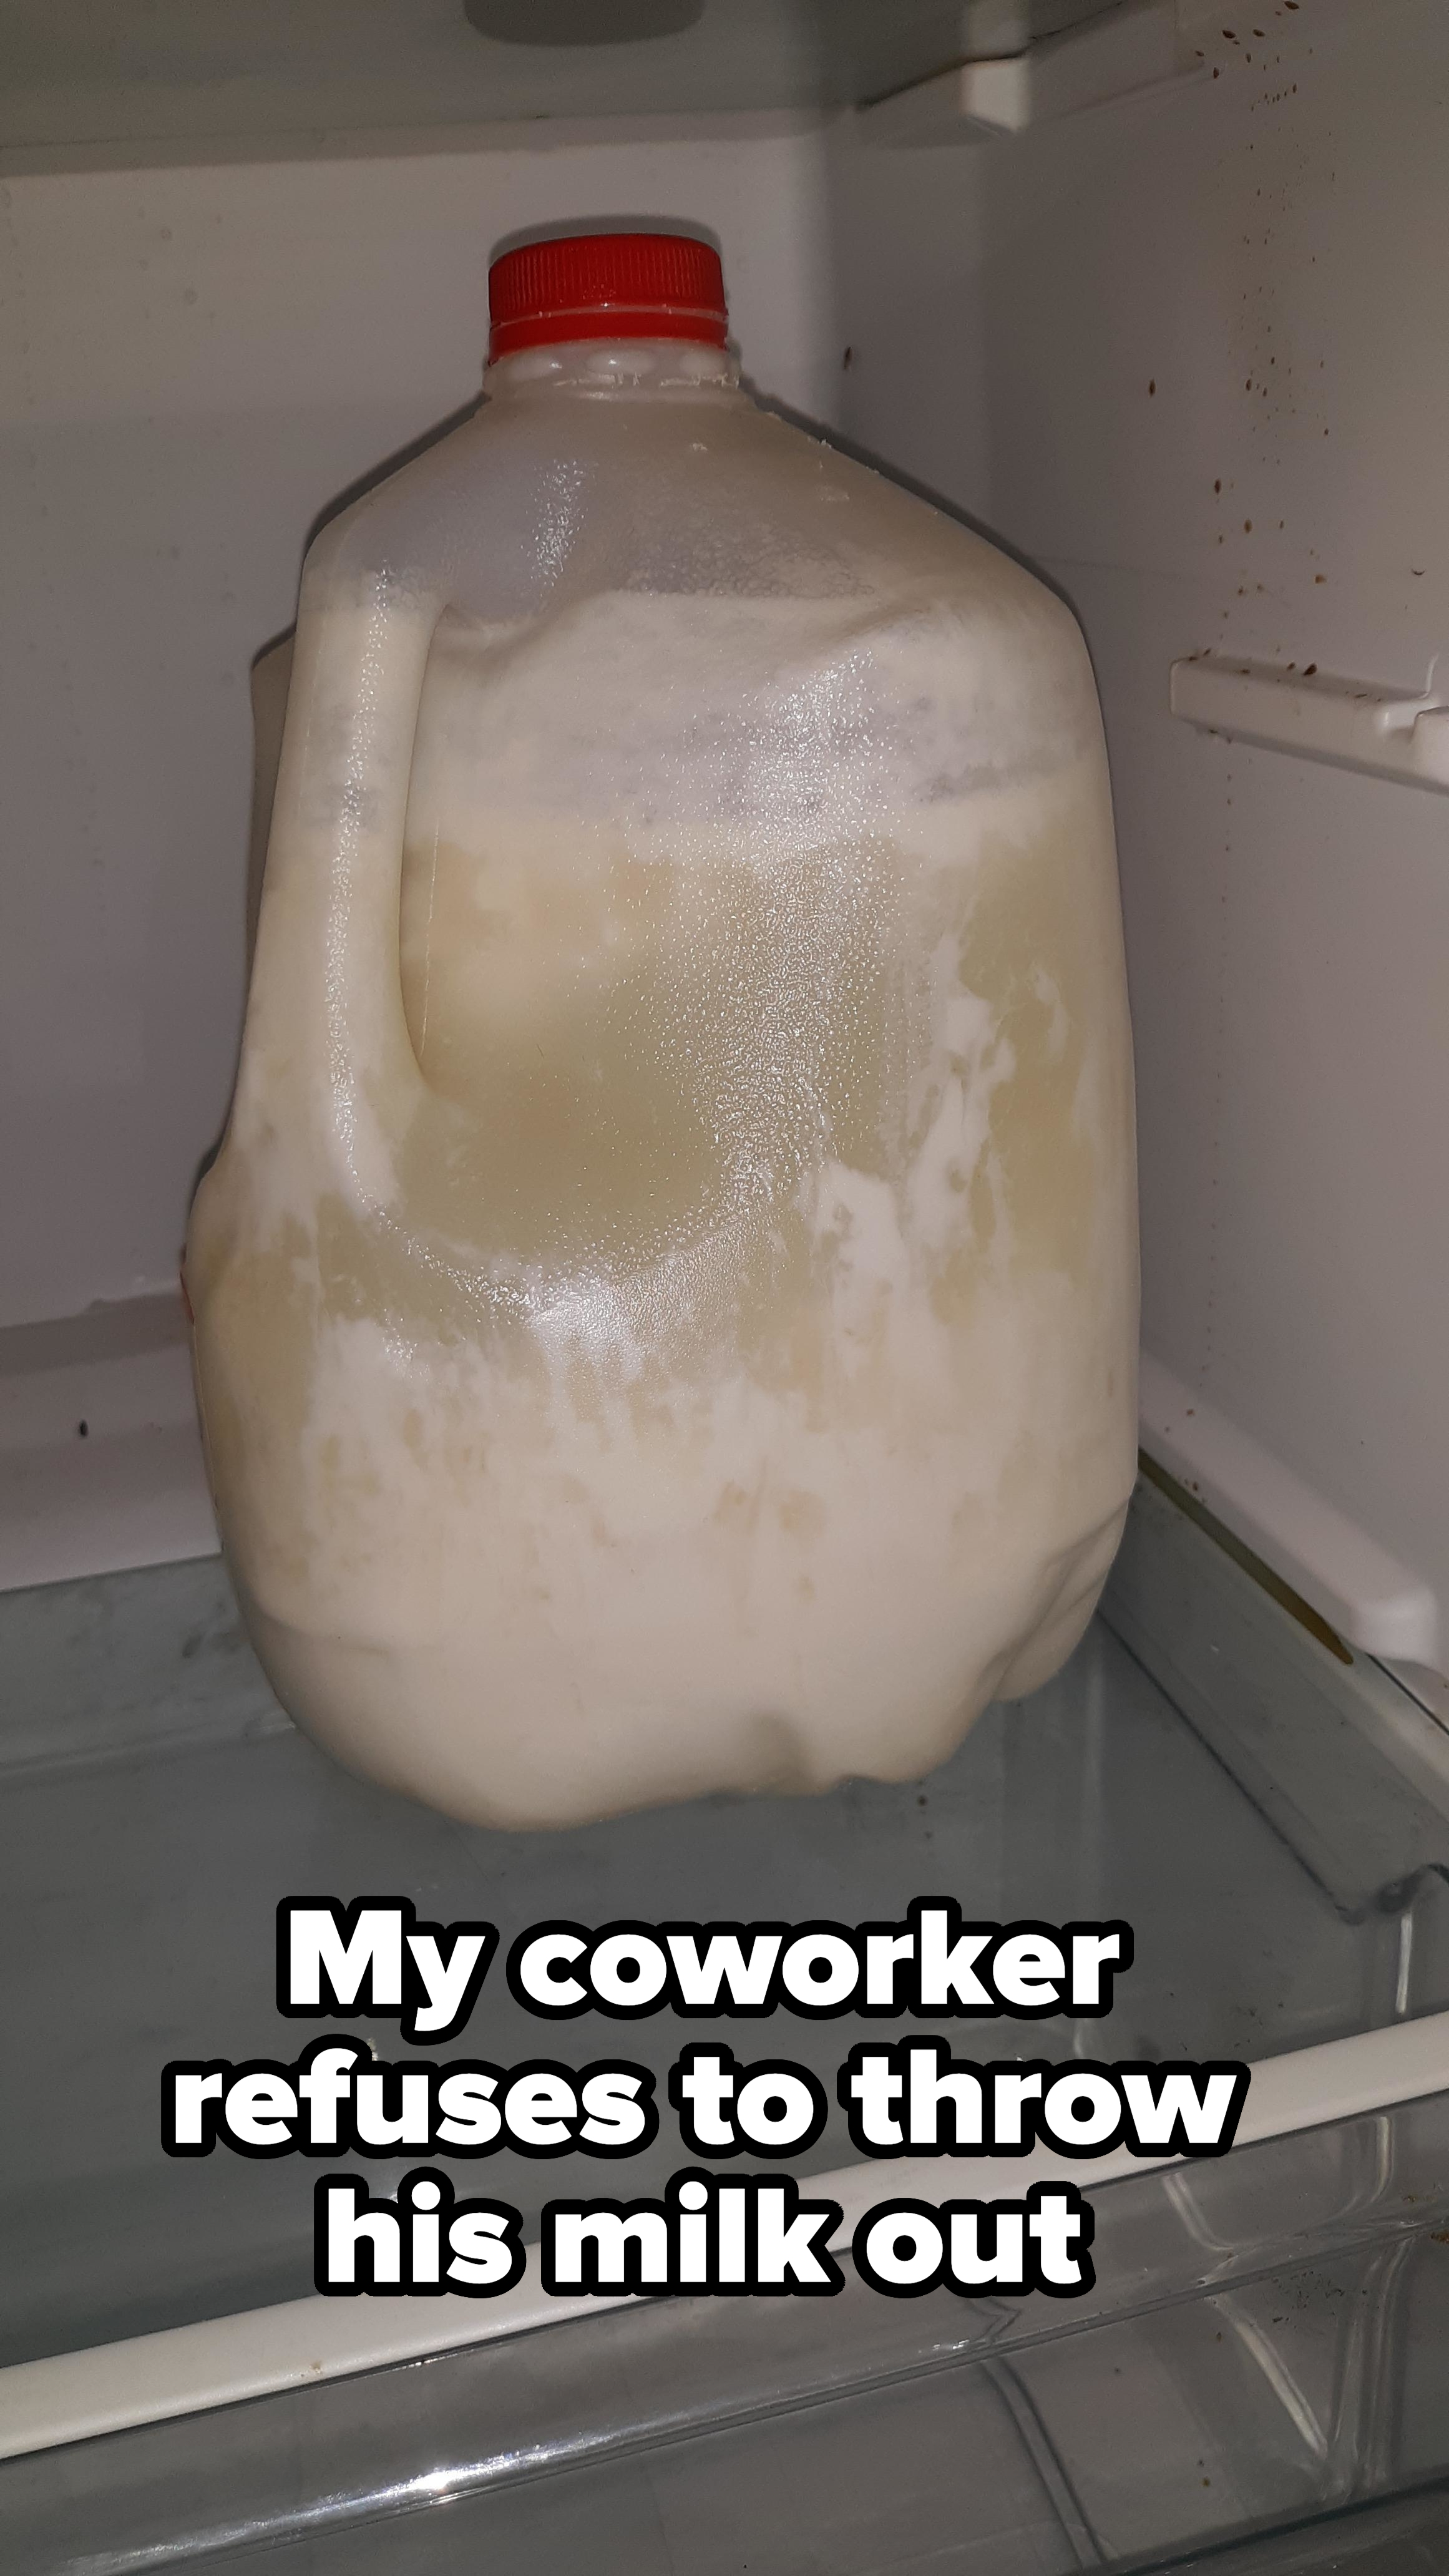 A gallon of frozen milk expanding inside a fridge